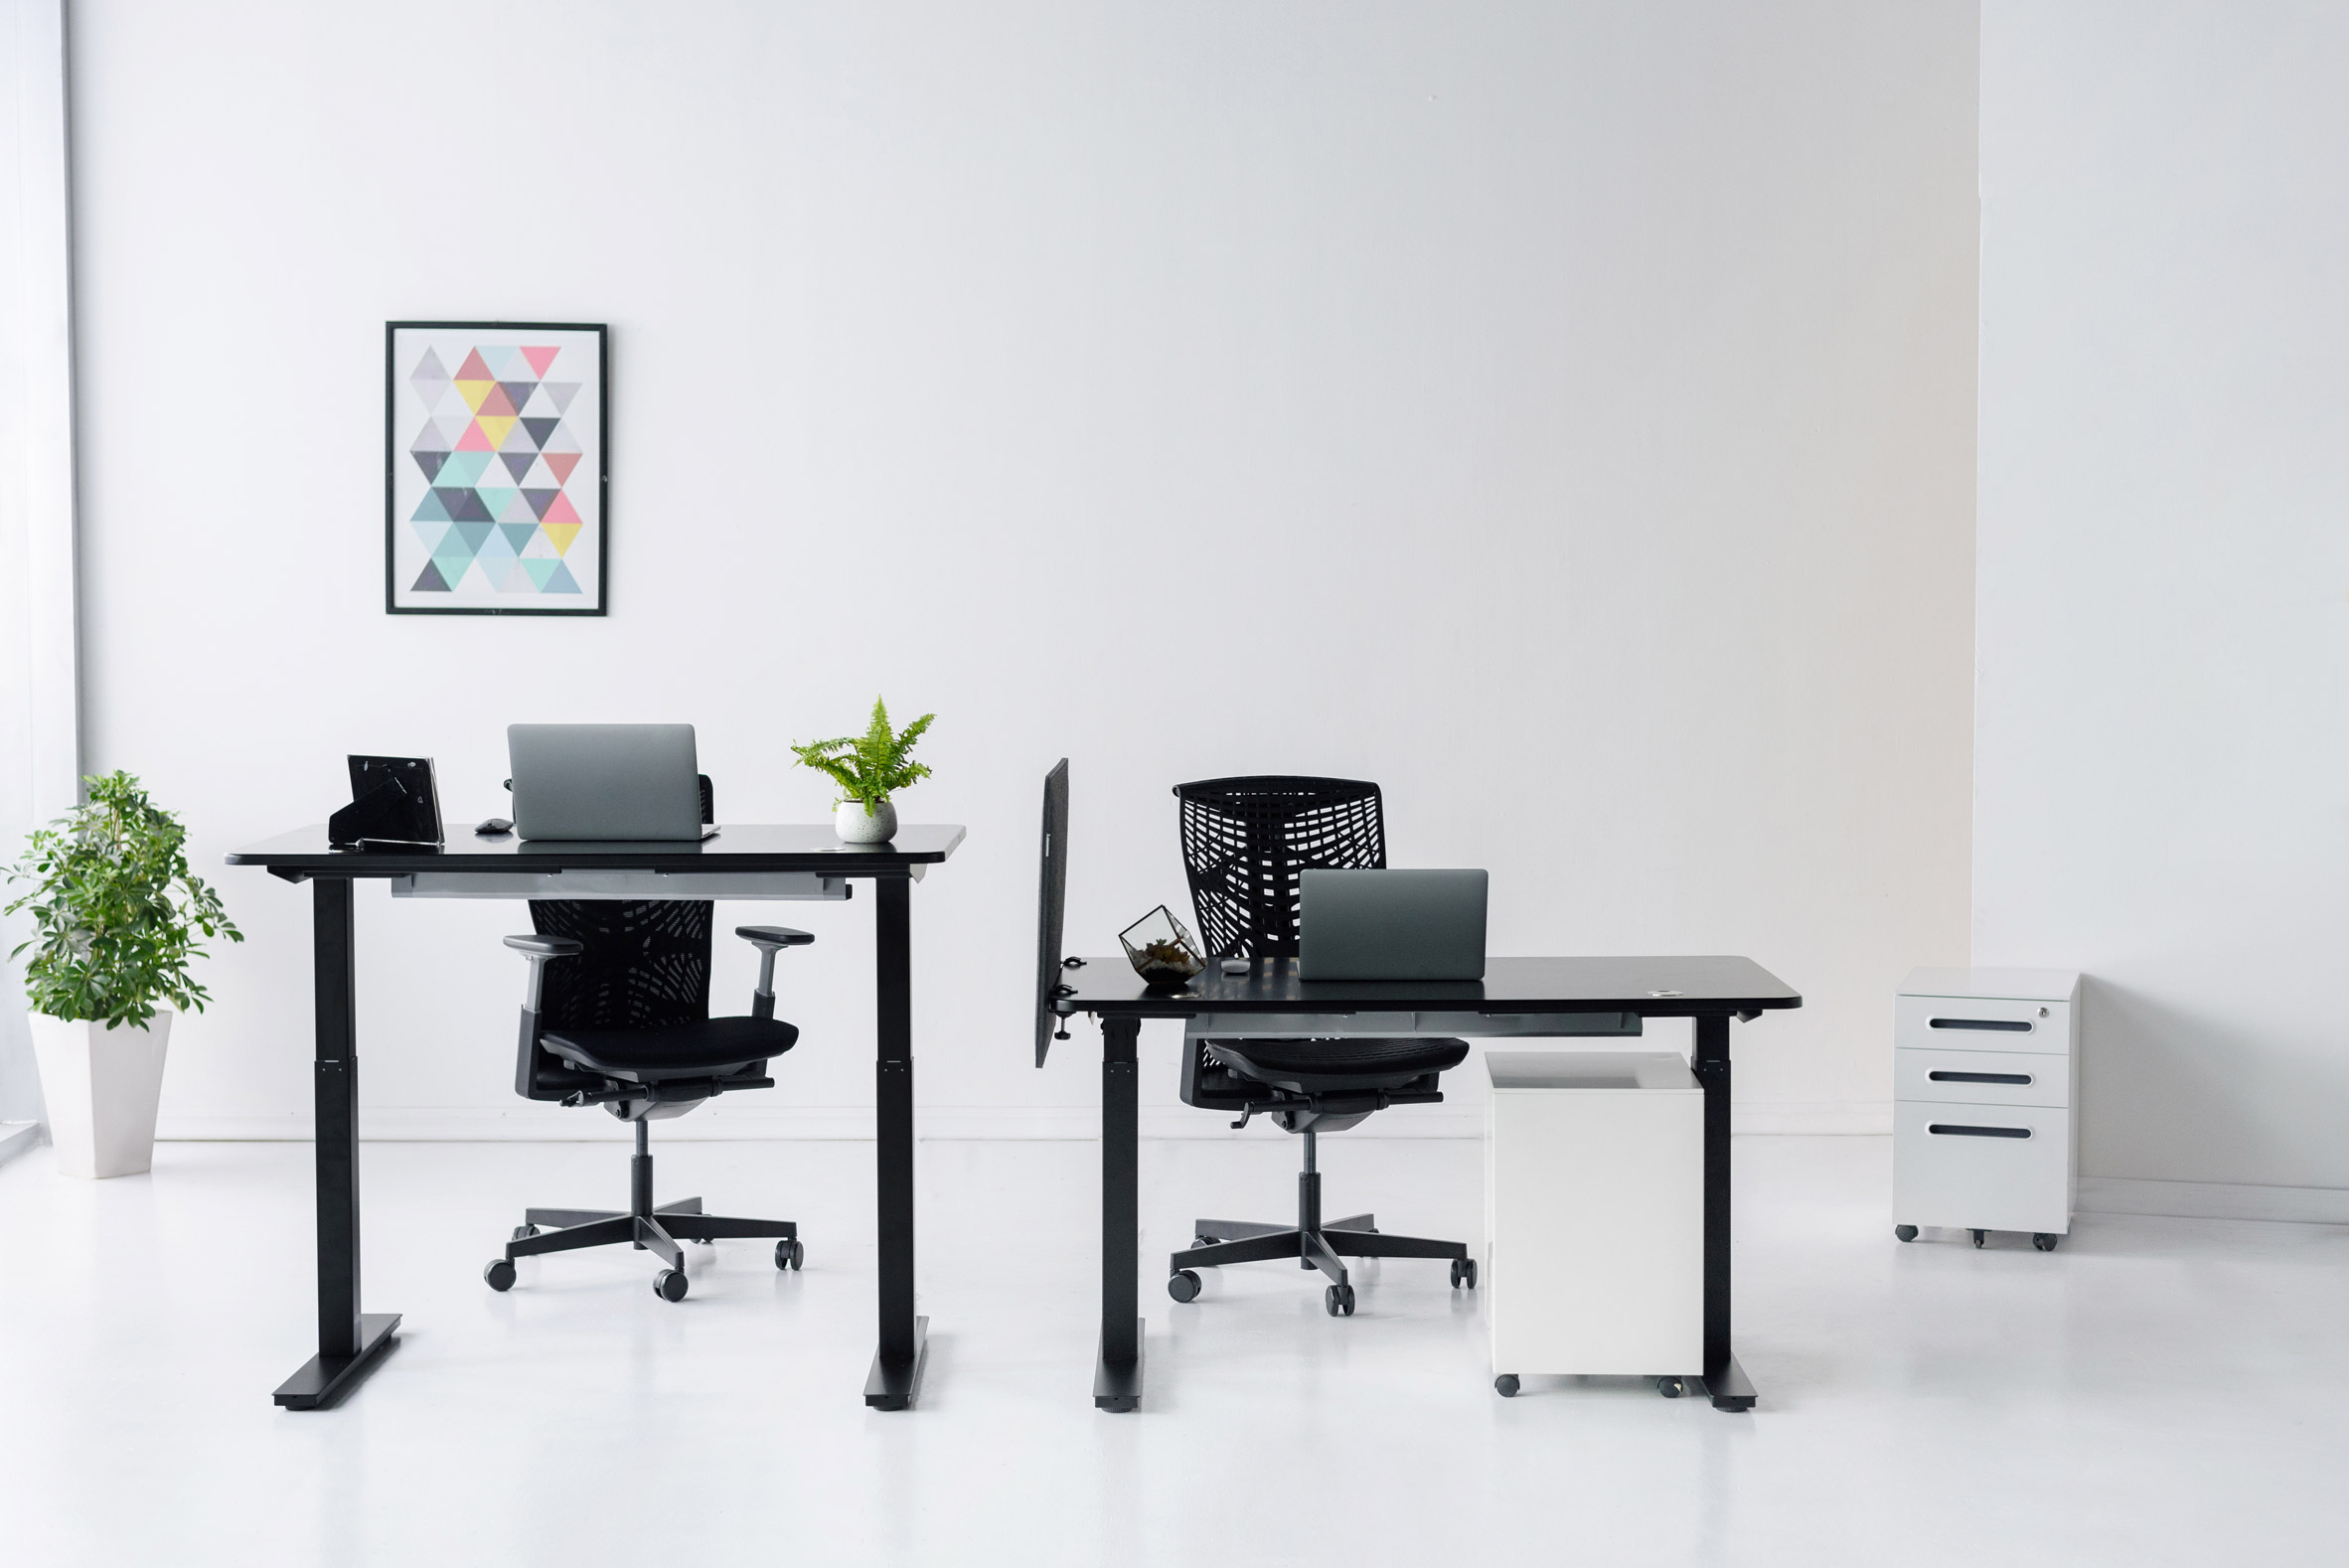 Smart Desk, Height Adjustable Desks